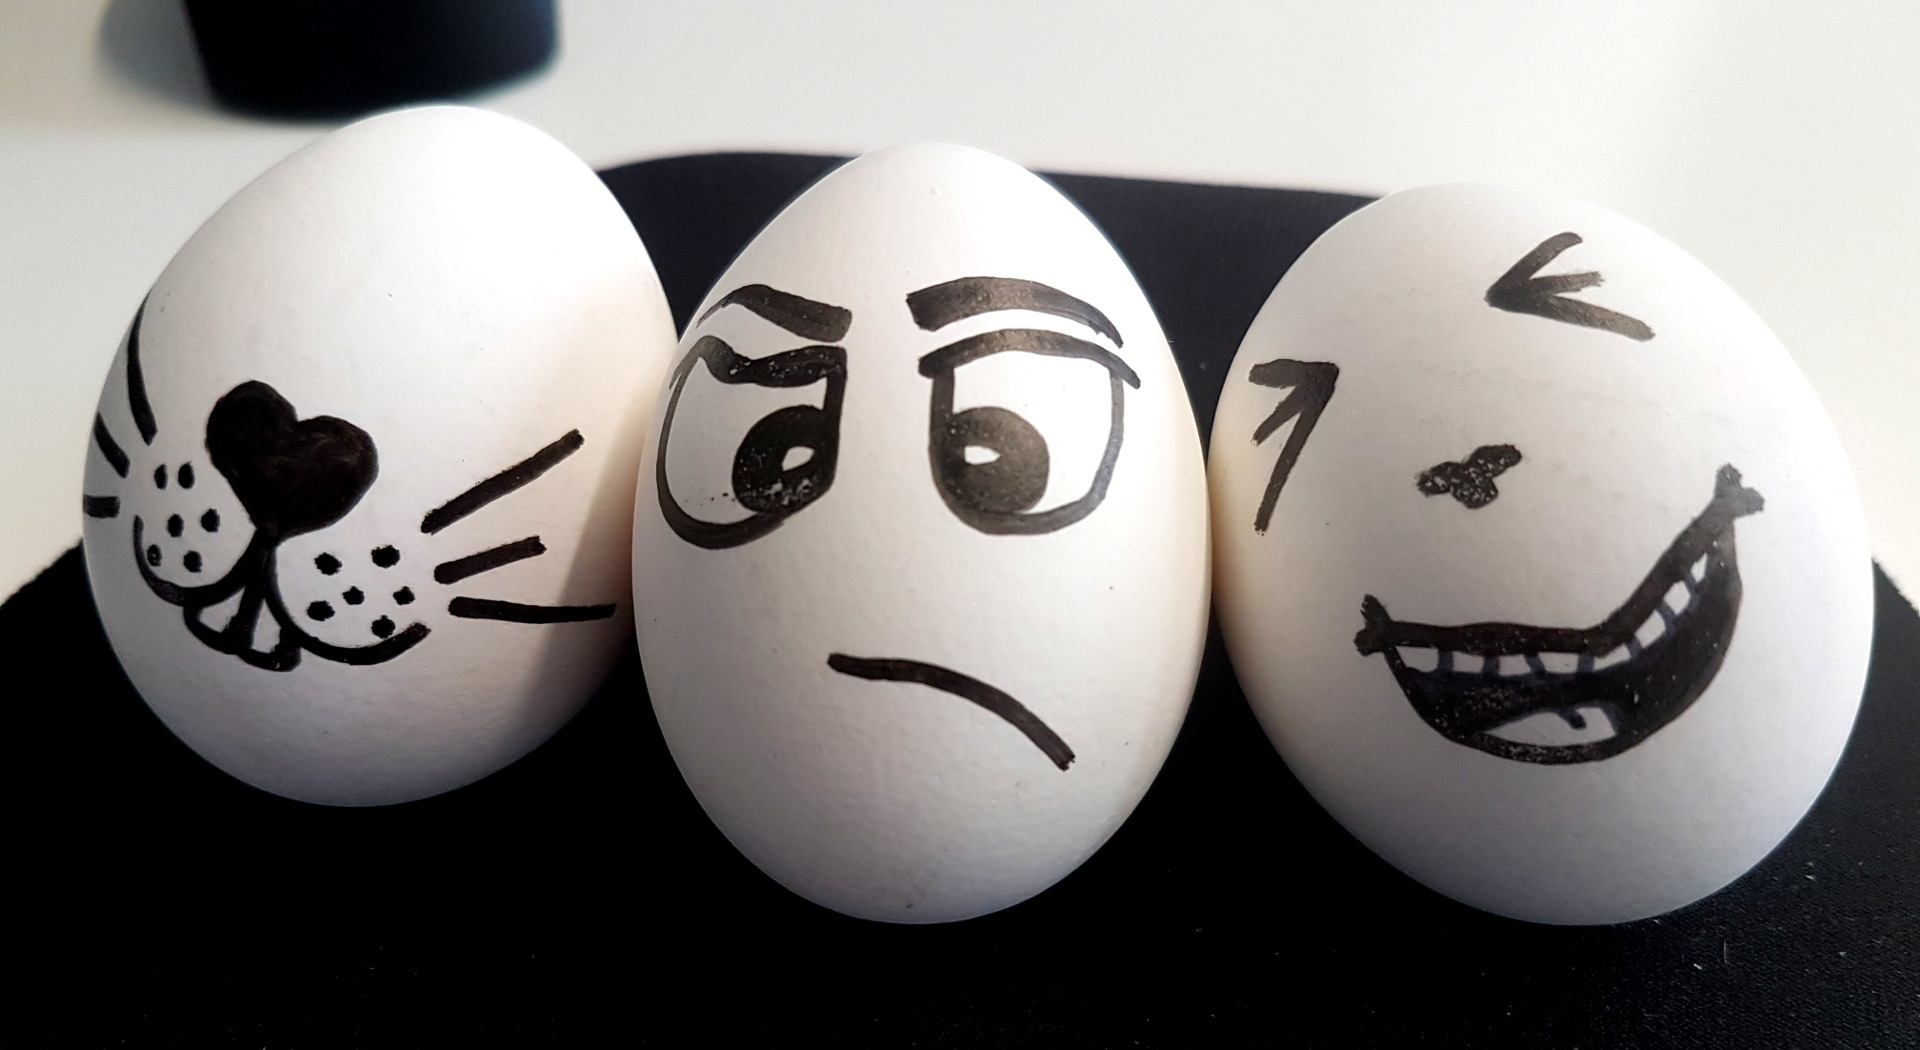 Ostereier Bemalen Mal Anders: 3 Bastelideen Fürs Osternest bestimmt für Lustige Gesichter Auf Eiern